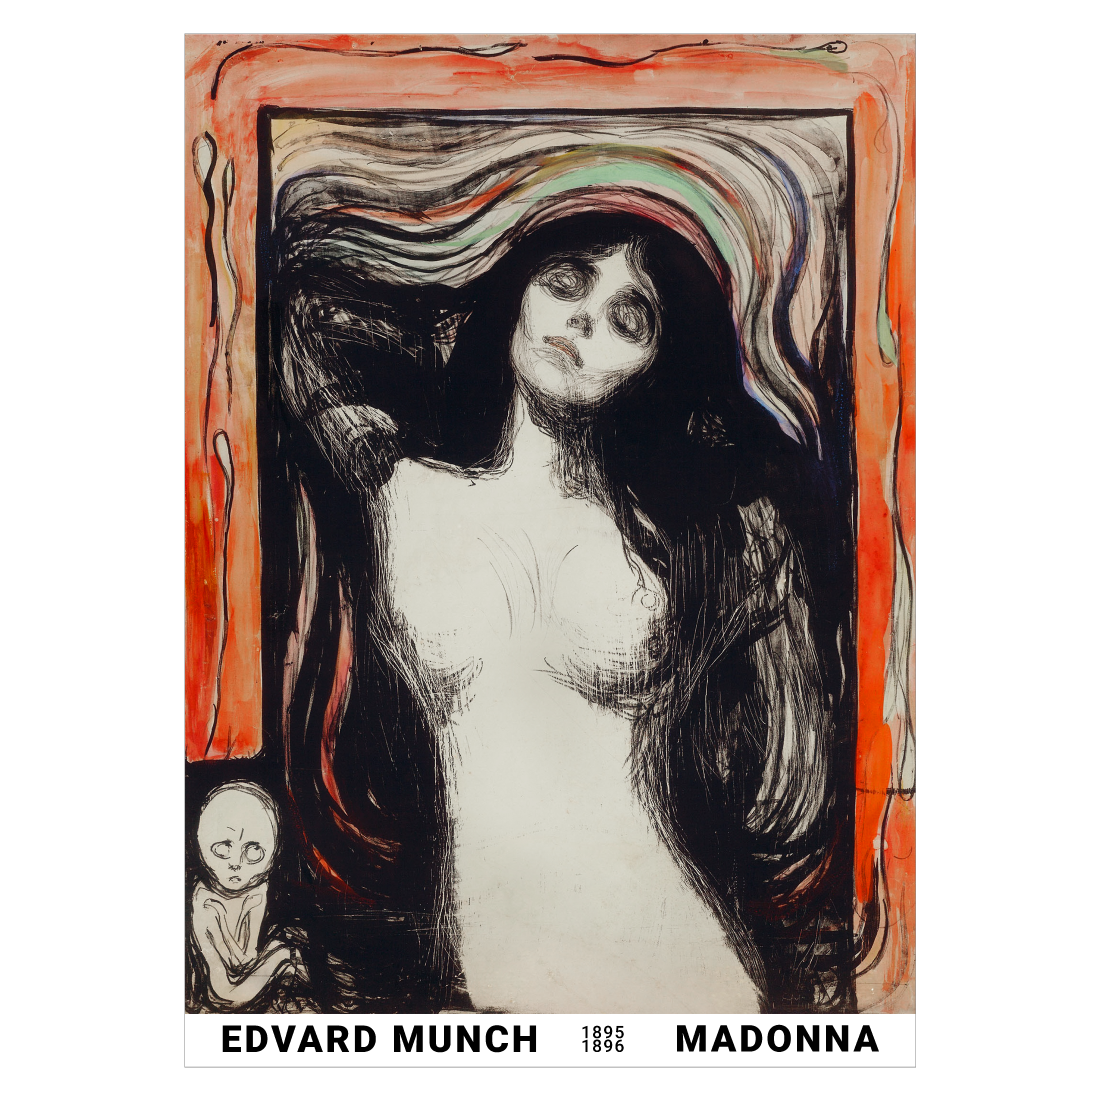 Kunstplakat med Edvard Munch "Madonna" fra 1896